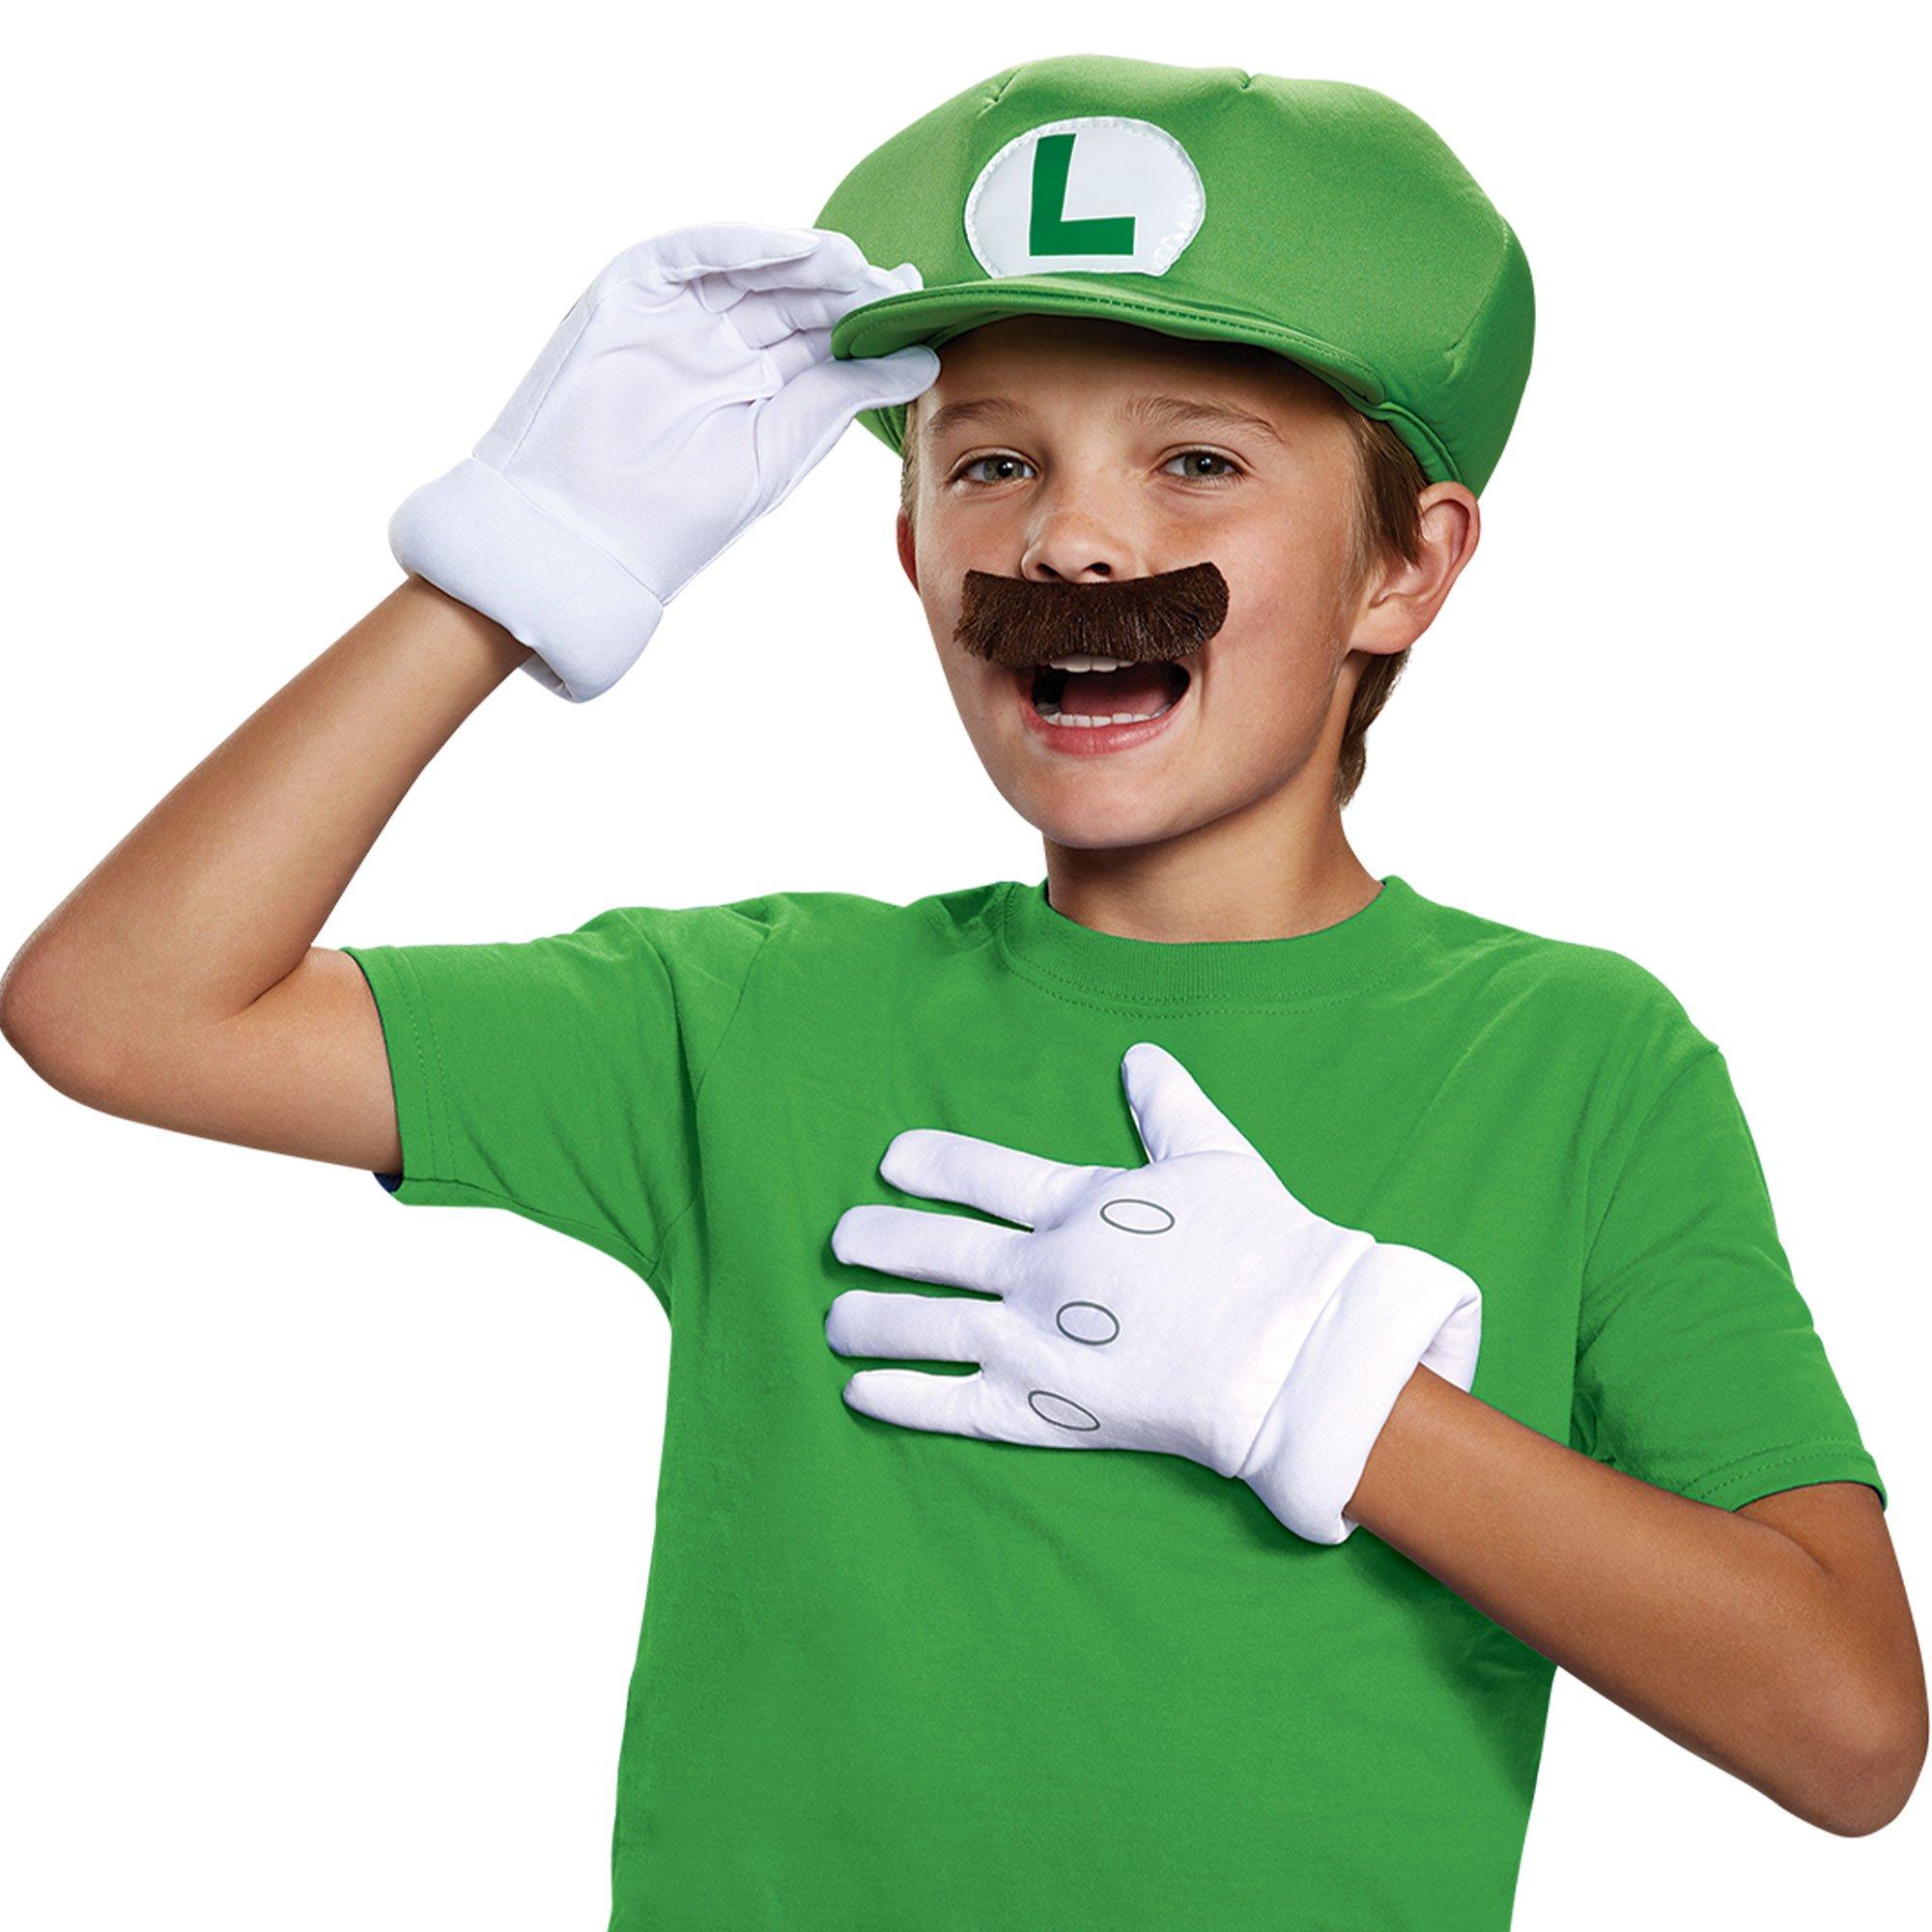 Lotvic Mario Costume Accessories, Cappello Super Mario Luigi